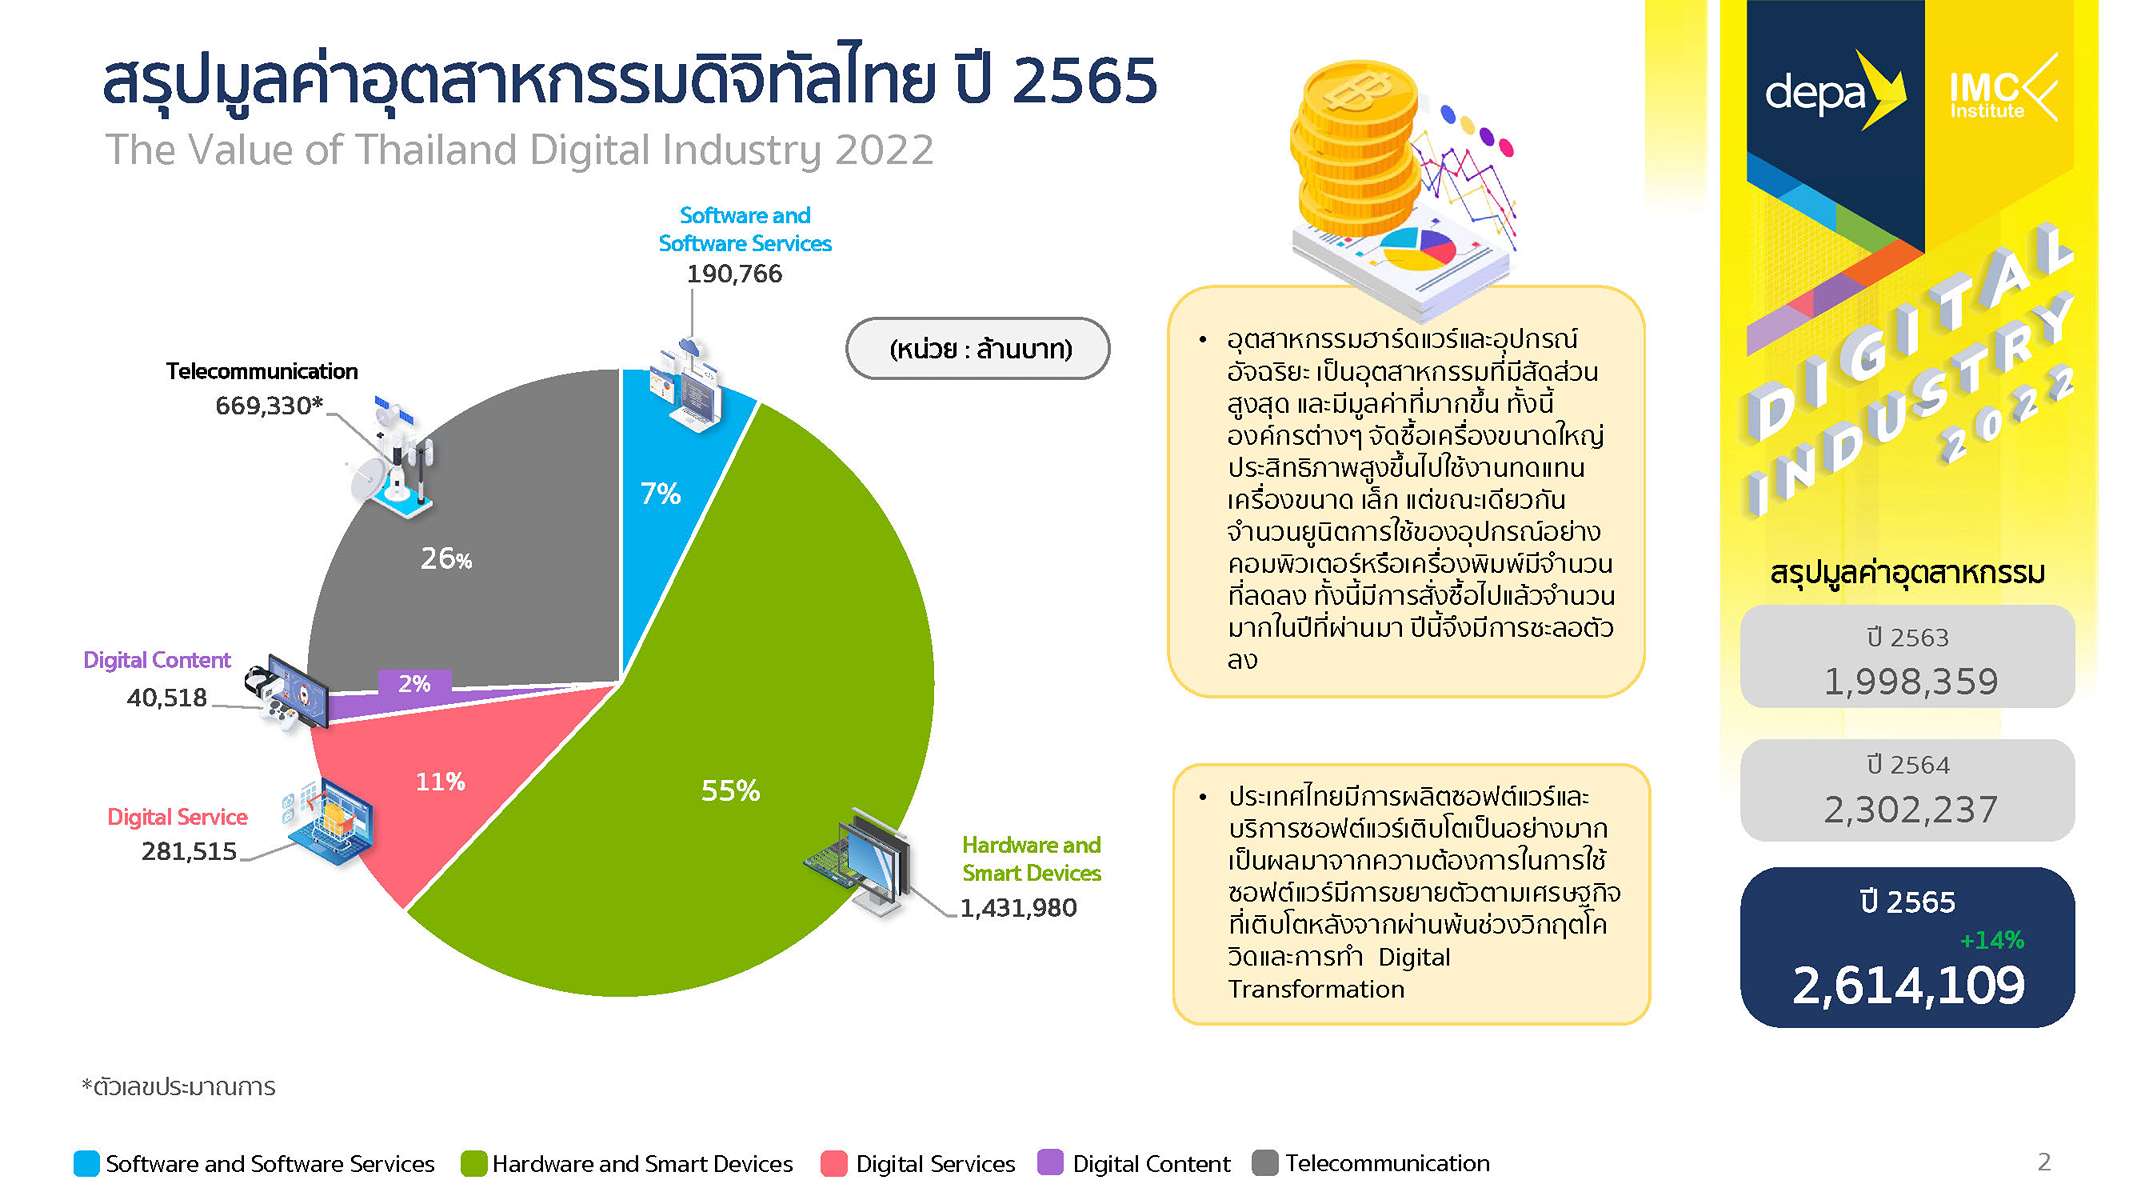 ดีป้า เผยอุตสาหกรรมดิจิทัลไทย ปี 2565 โต 14% มูลค่ารวมแตะ 2.61 ล้านล้านบาท 